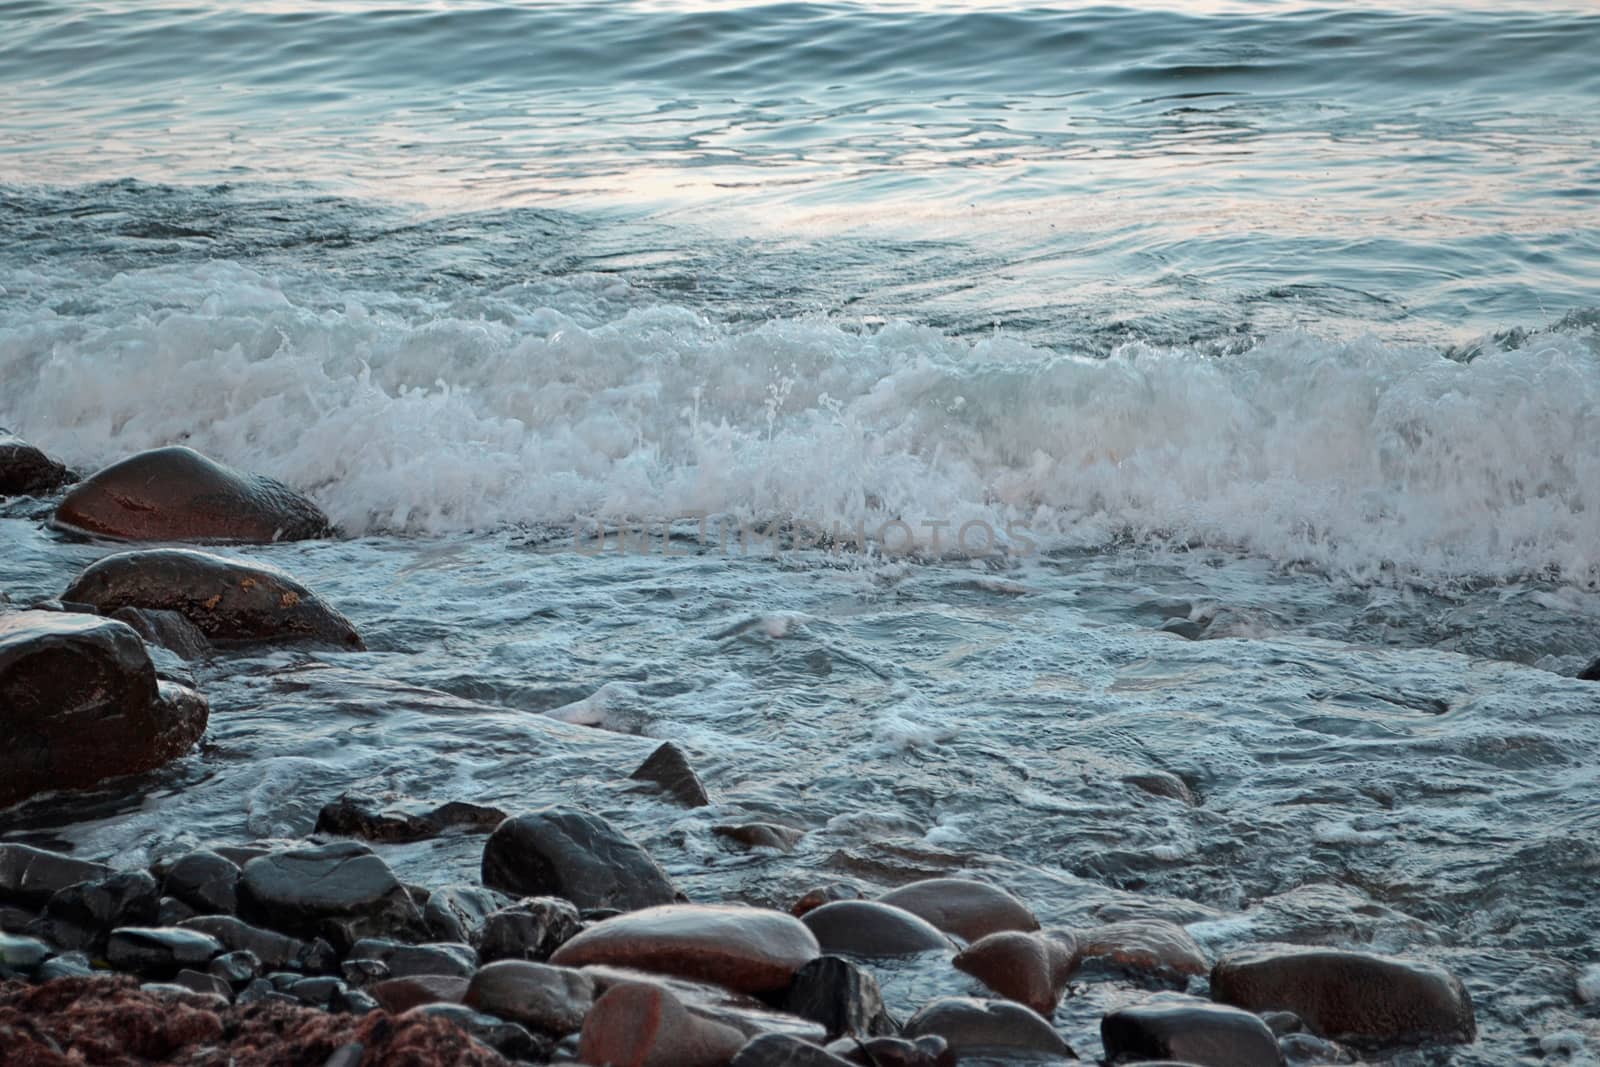 Foamy wave on the stone seashore by Irene1601